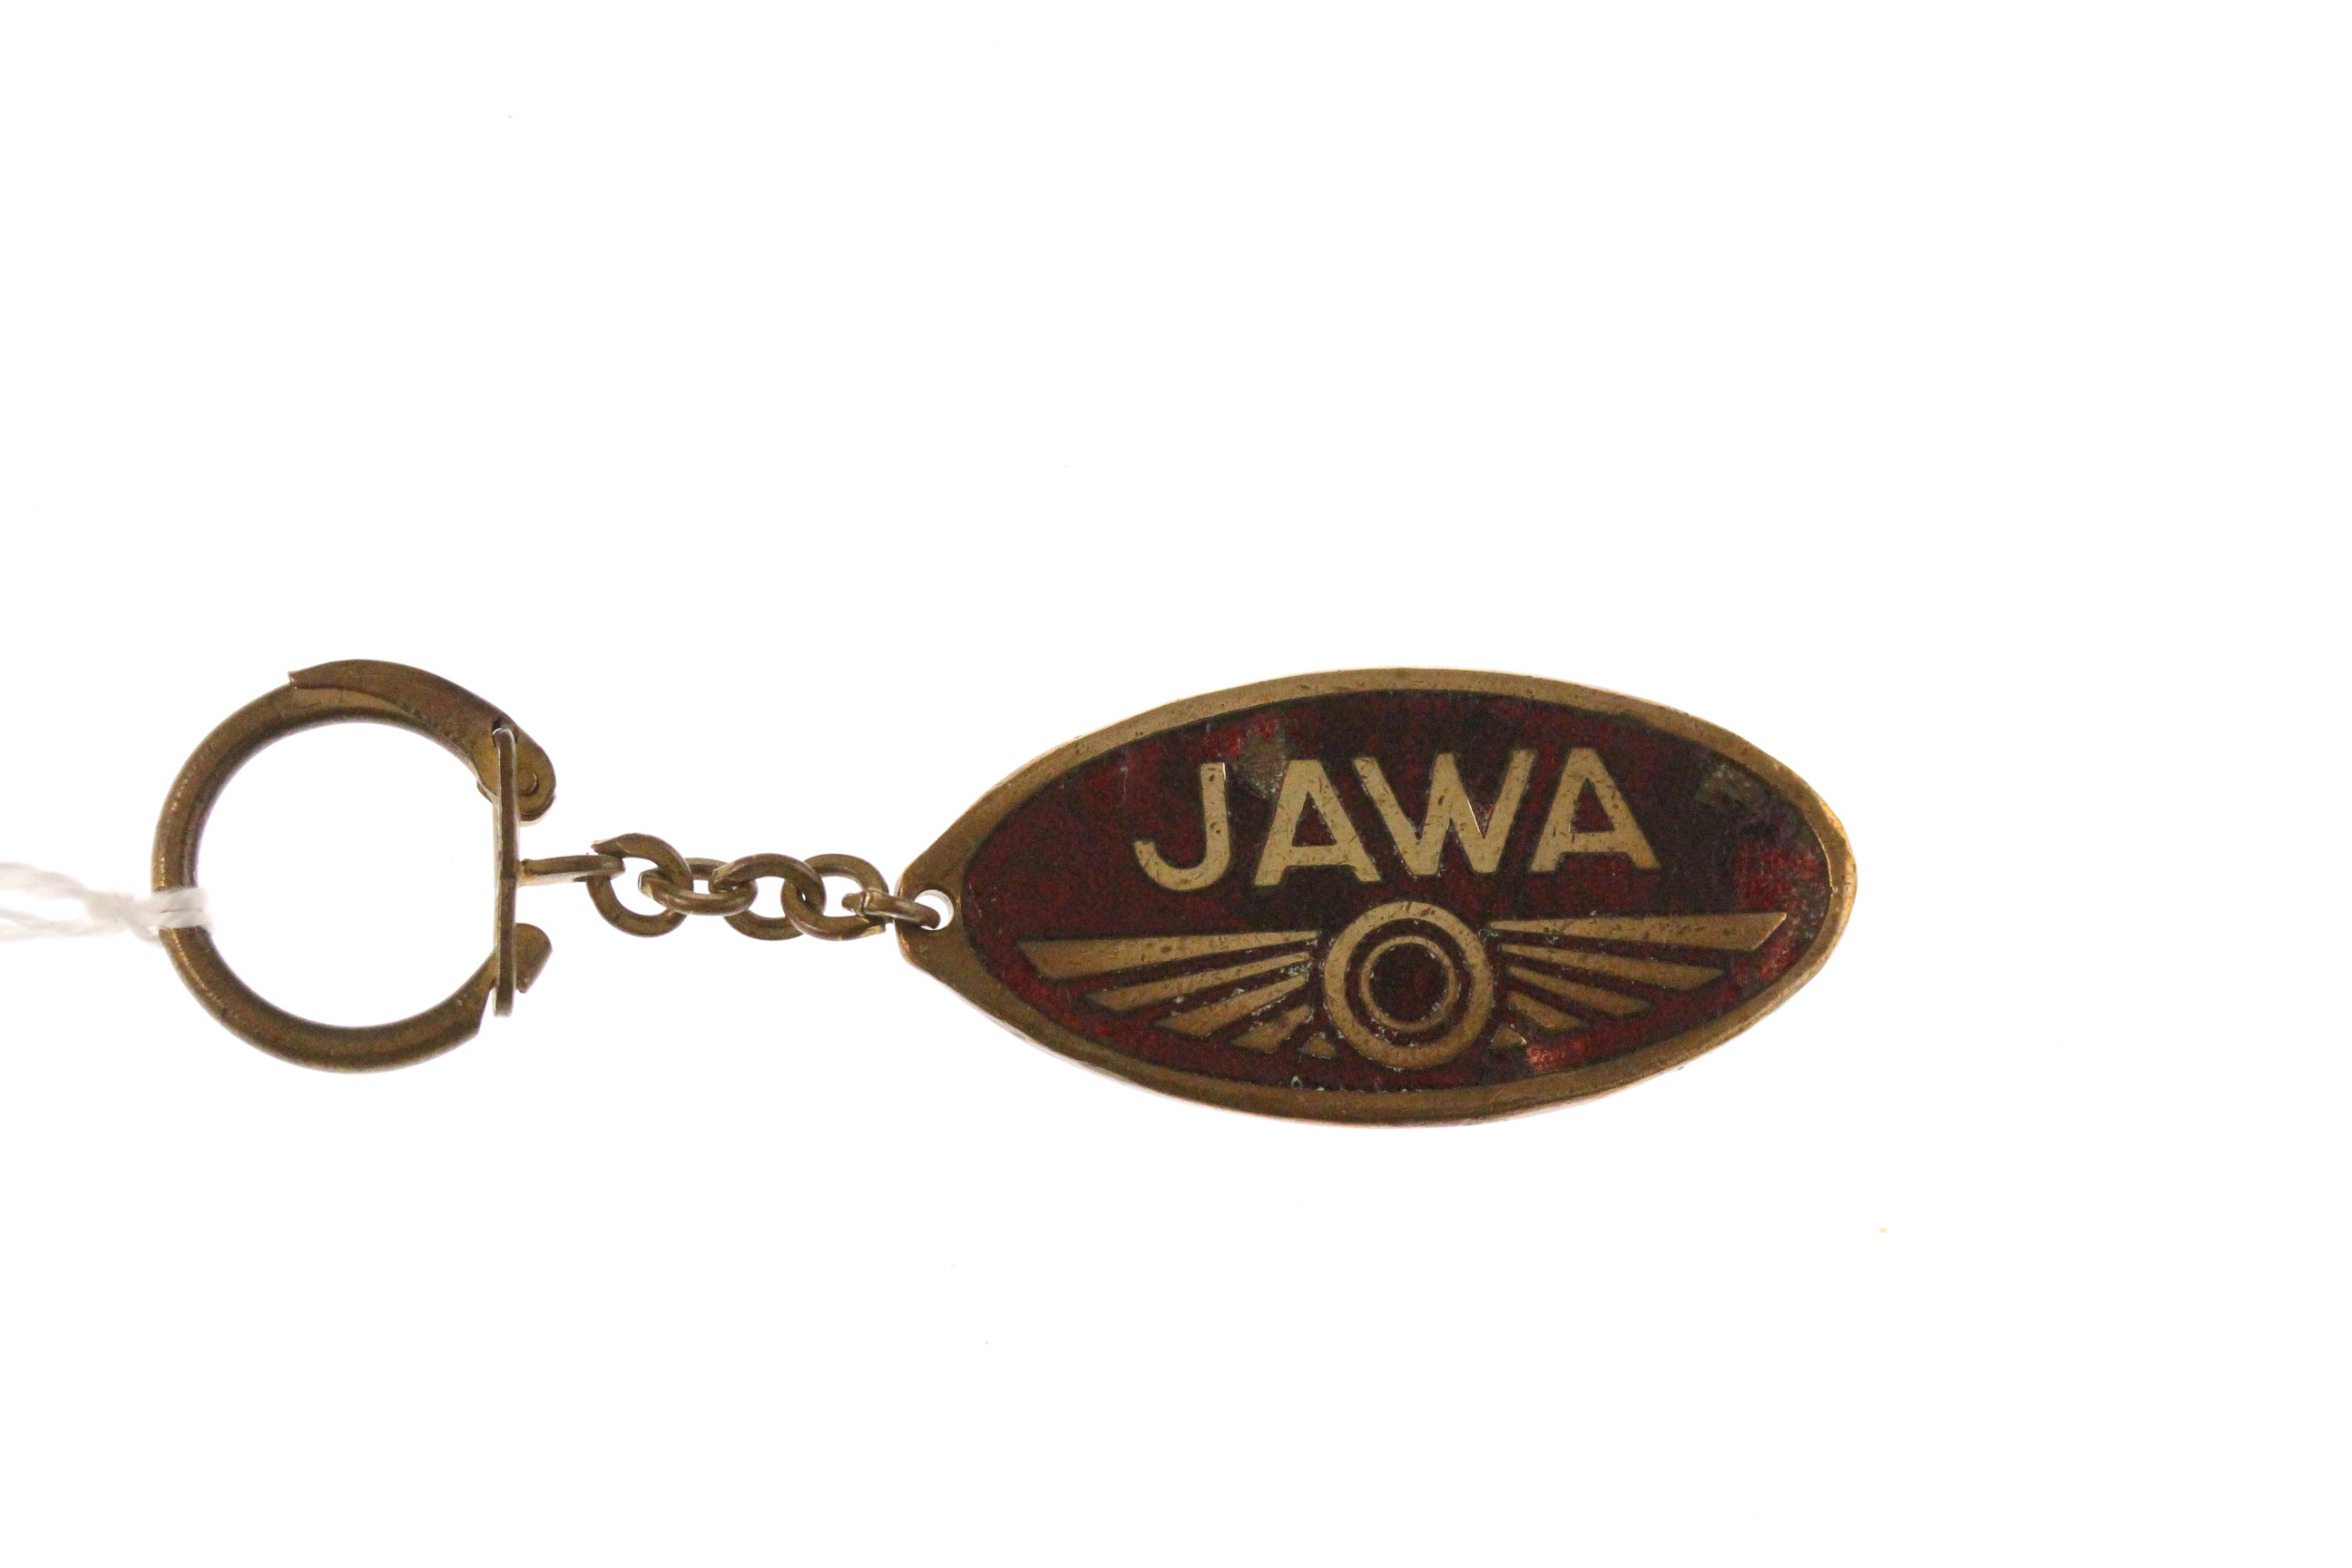  Jawa  250 350 original vintage 1950s keychain  collector 